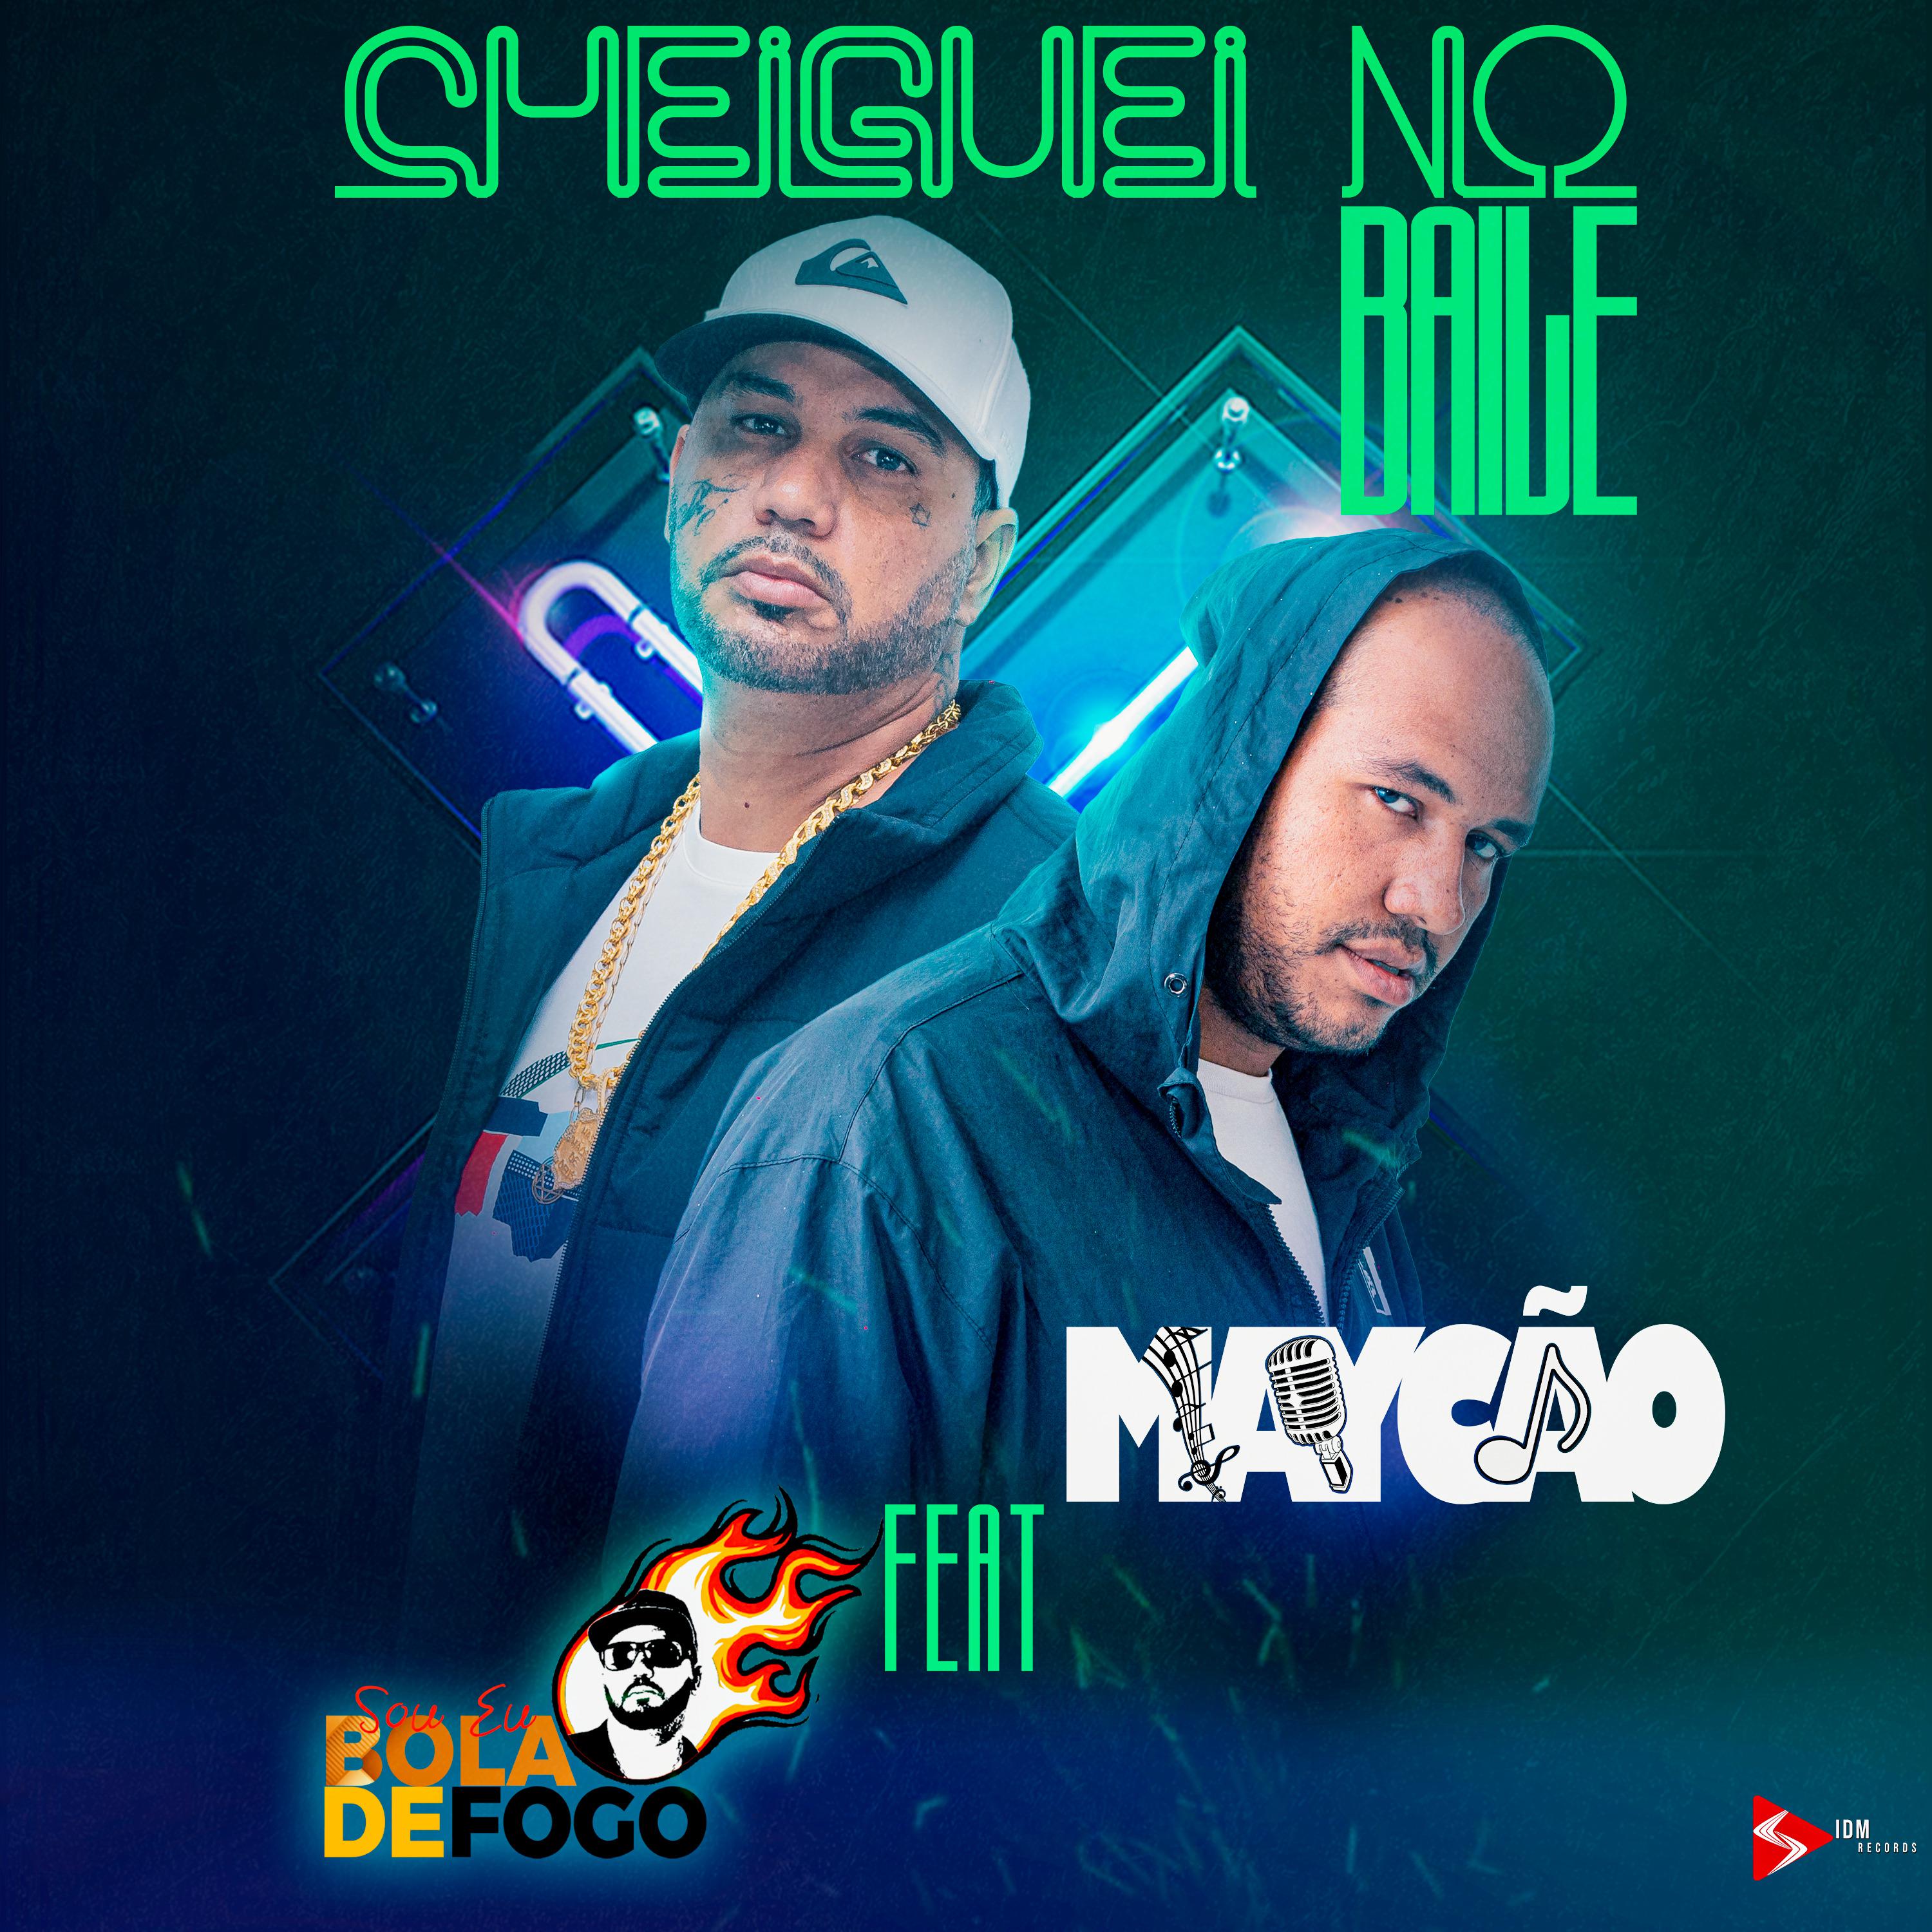 Постер альбома Cheguei no Baile